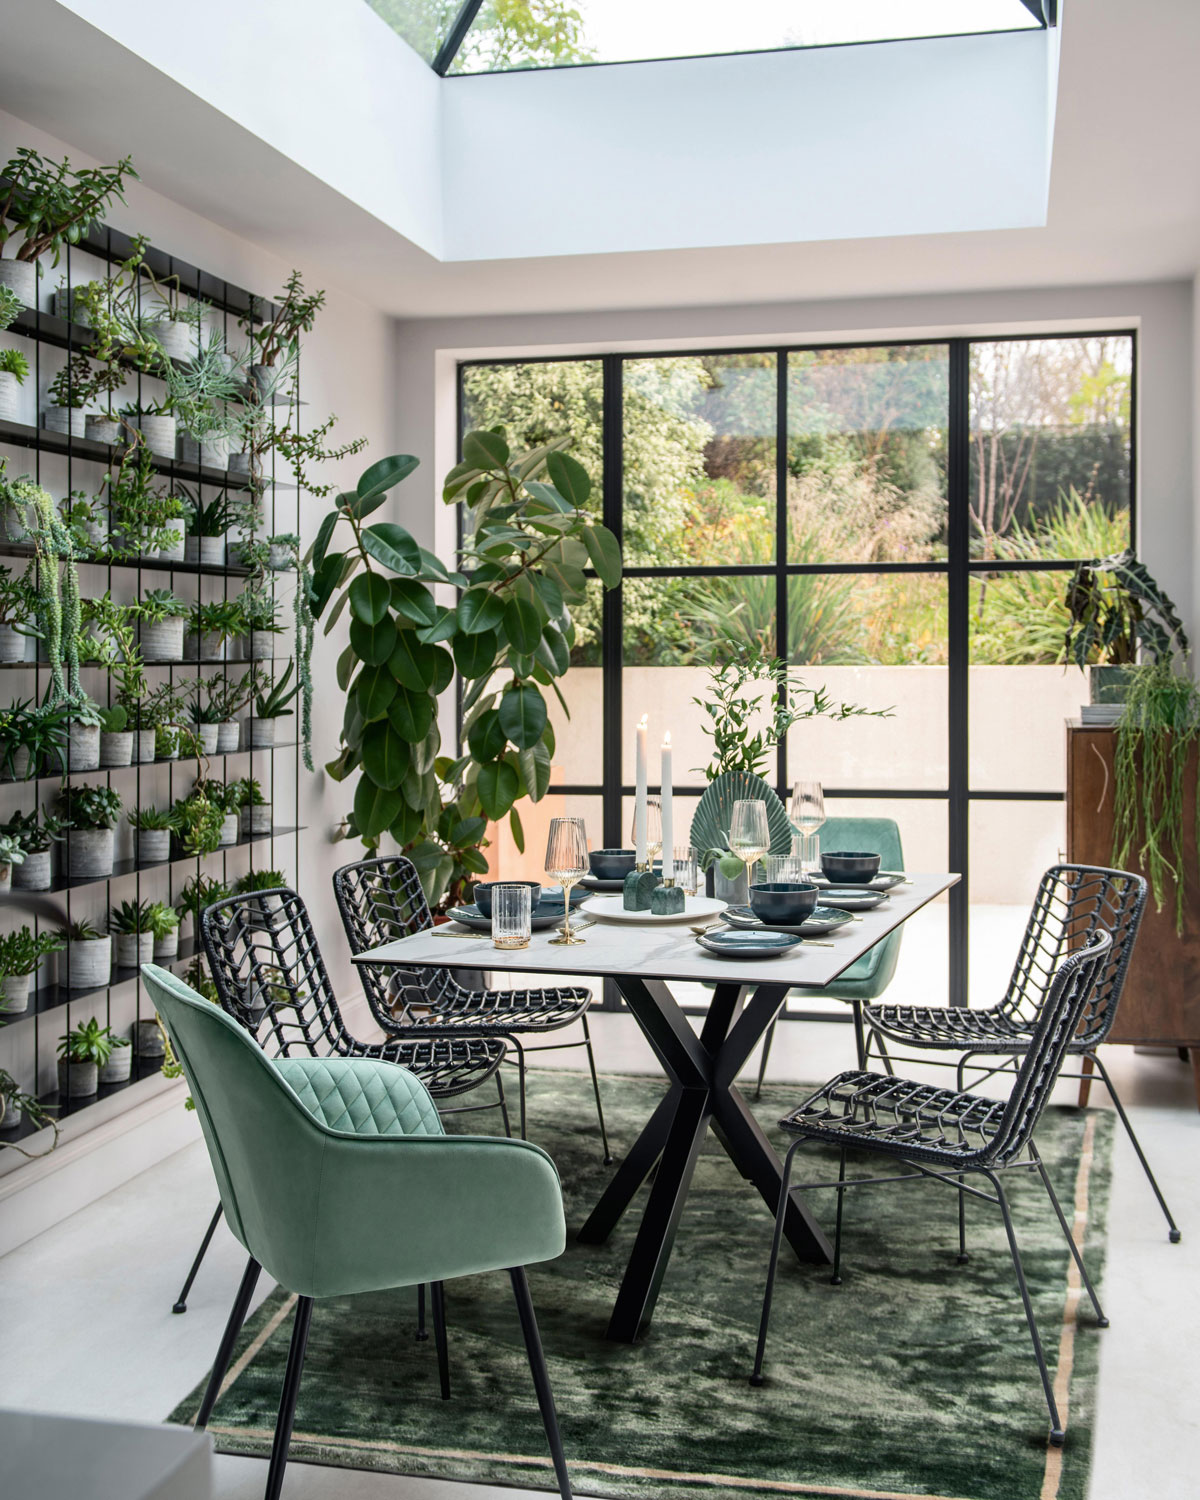 Jedáleň s čalúnenými kresielkami, vertikálnou stenou s kvetinami a presklenou stenou s výhľadom na terasu, celý priestor je ladený v tónoch zelenej